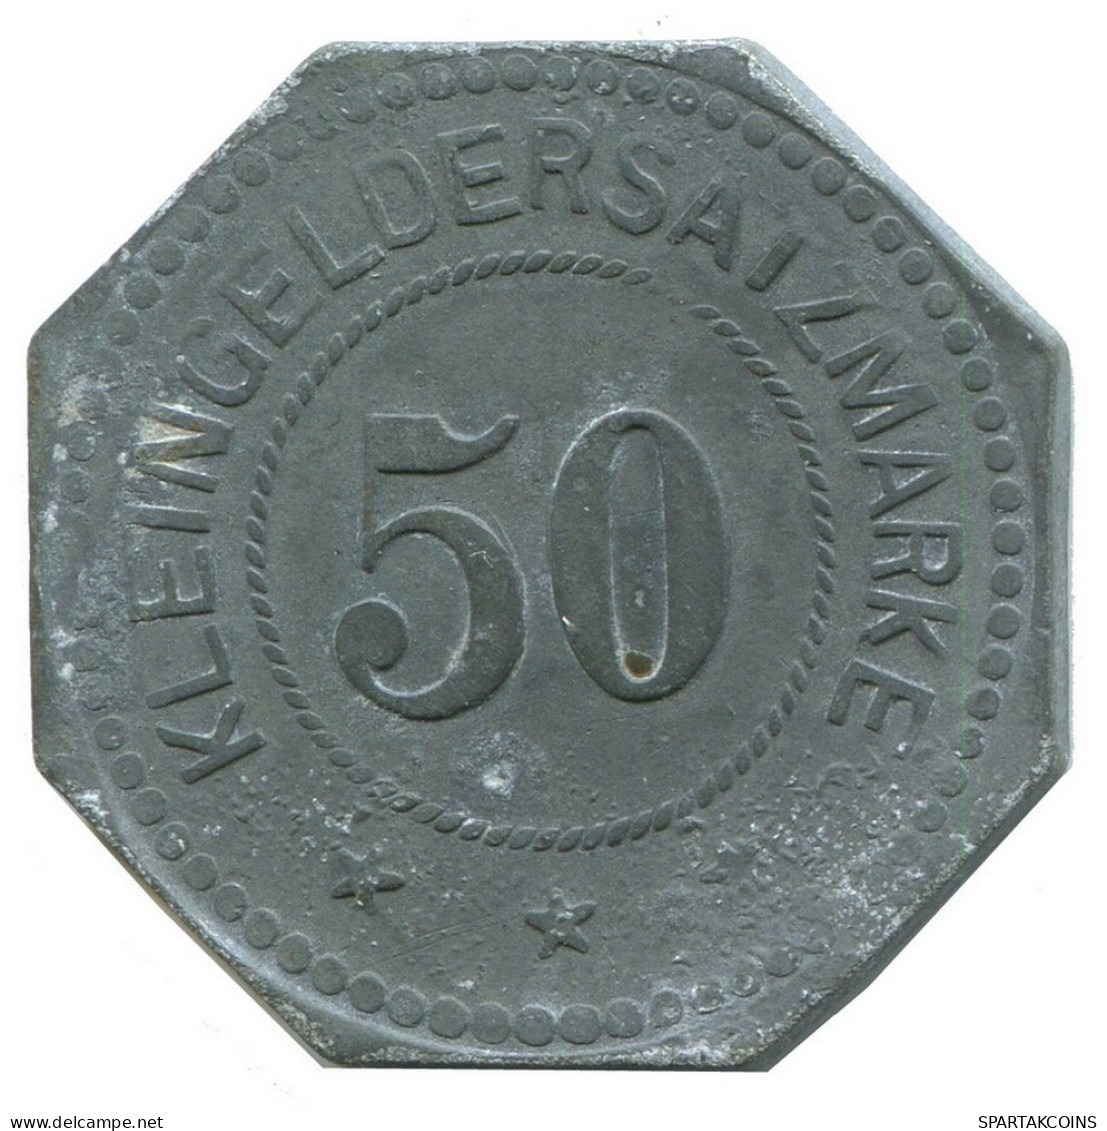 PRUSSIE RUSSIA 50 PFENNIG 1914 Lichtenfels Notgeld German States #DE10511.6.F - 50 Pfennig